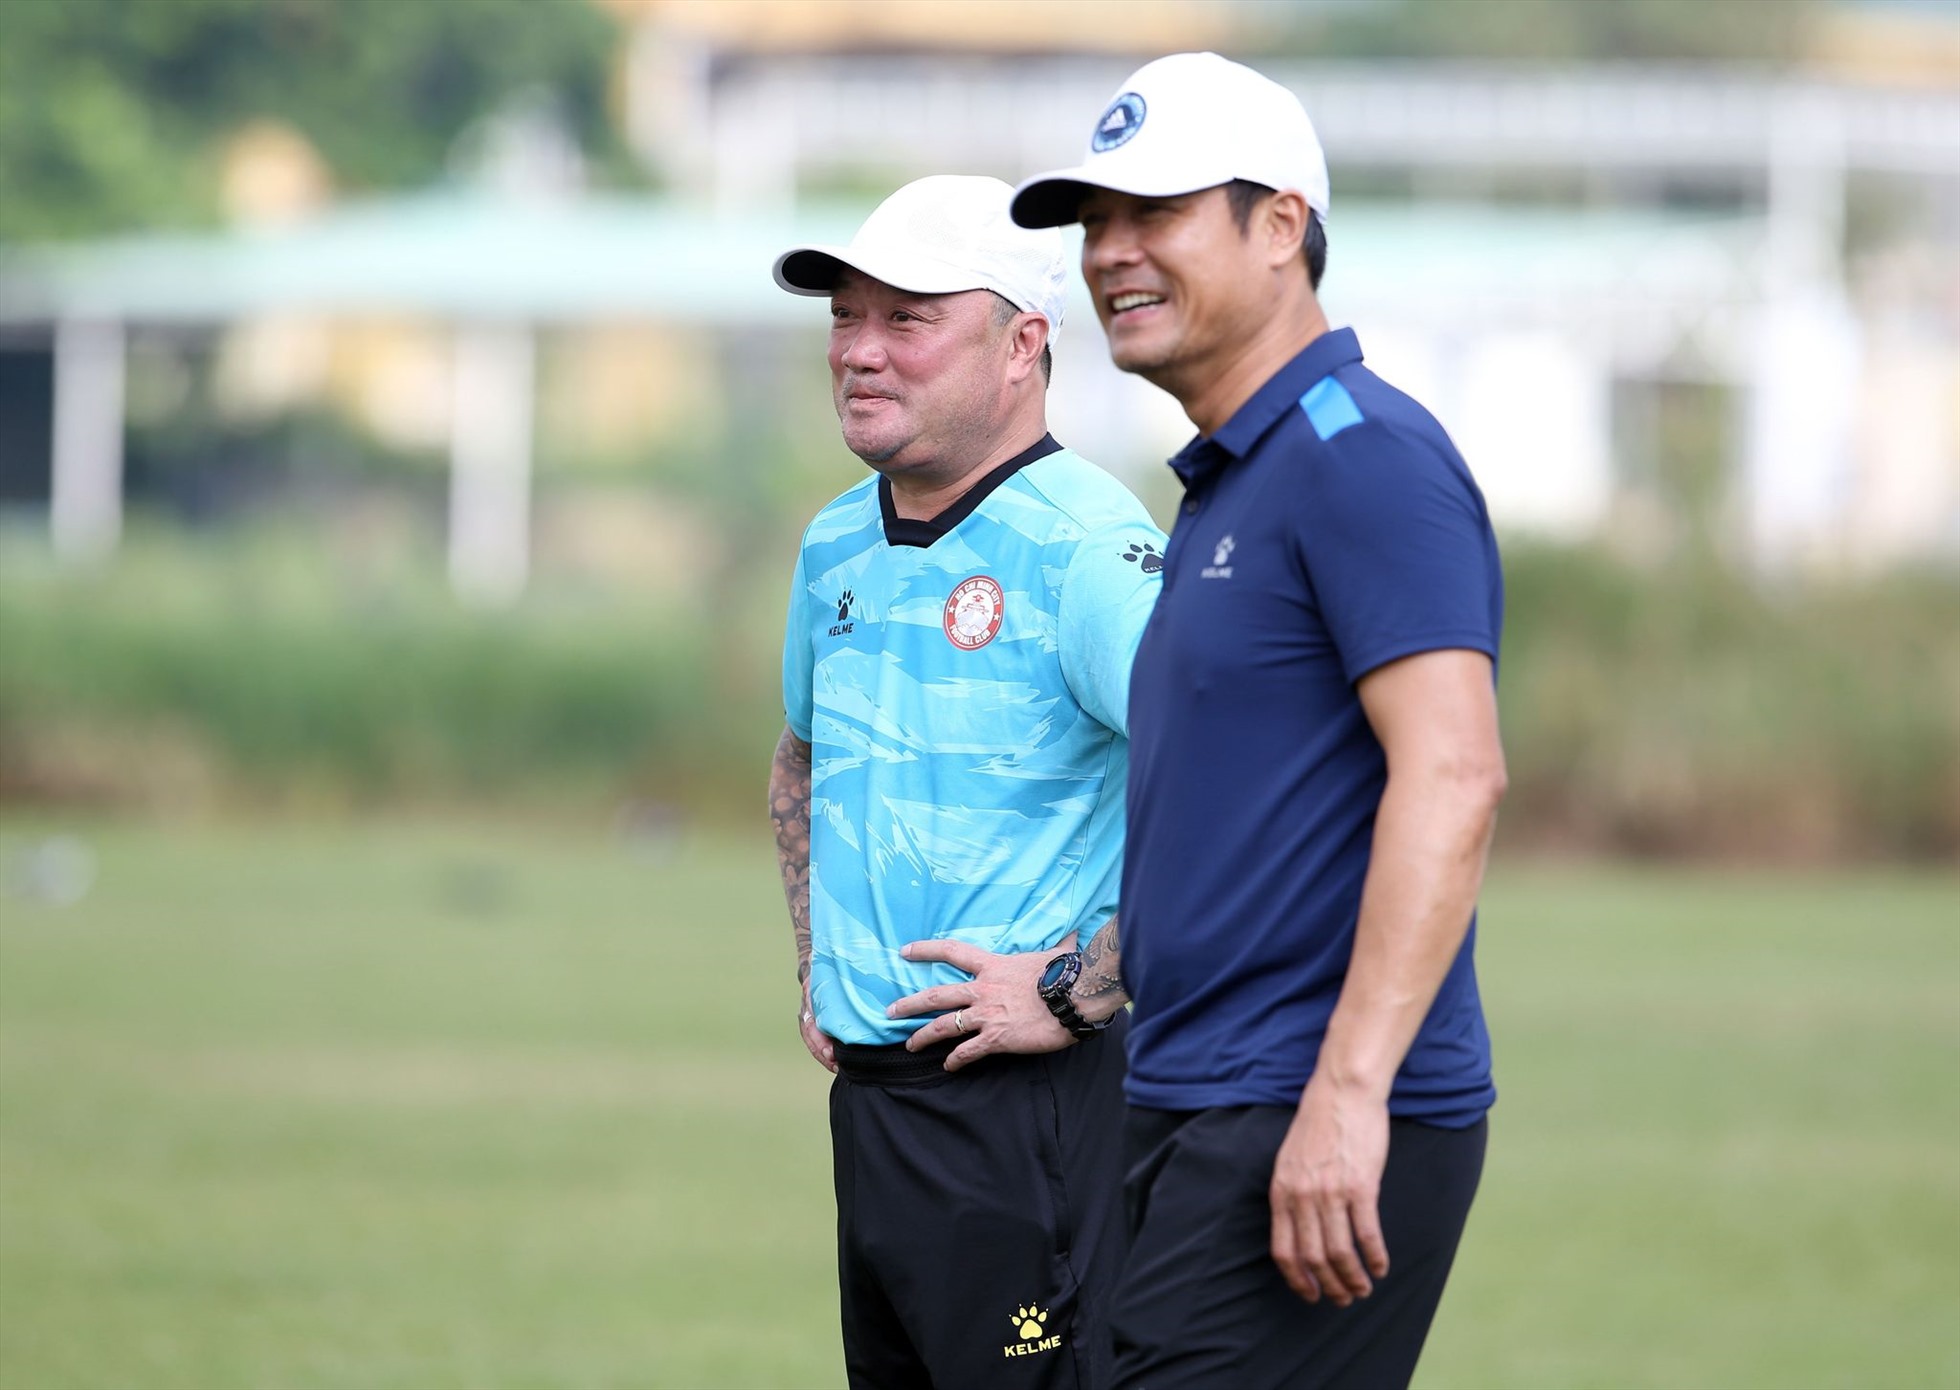 Chủ tịch Nguyễn Hữu Thắng cũng xuất hiện và trò chuyện khá lâu với huấn luyện viên Trương Việt Hoàng. Trước đó, ông Thắng cũng dẫn dắt câu lạc bộ TPHCM giành 1 chiến thắng và 1 trận thua ở vòng 12, 13 V.League 2022.